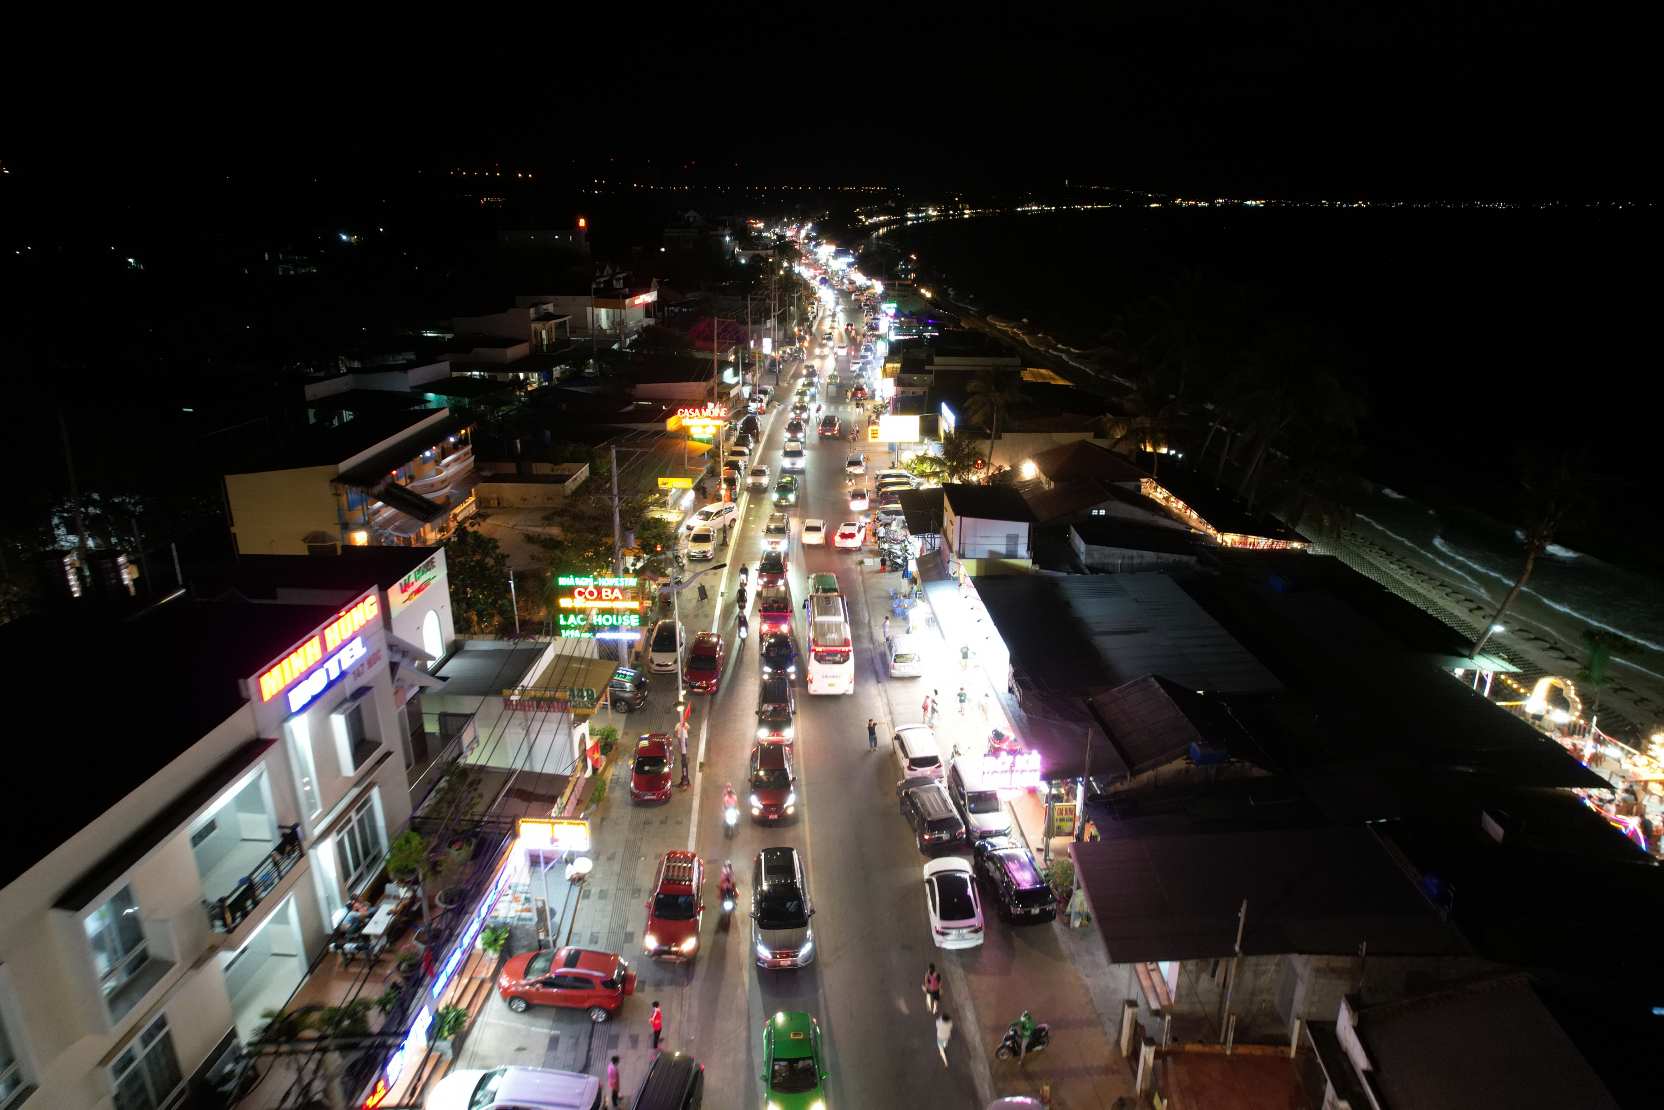 Khung cảnh ô tô xếp hàng dài đoạn bờ kè nhiều quán hải sản đường Nguyễn Đình Chiểu, Phan Thiết nhìn từ trên cao. Ảnh: Duy Tuấn 